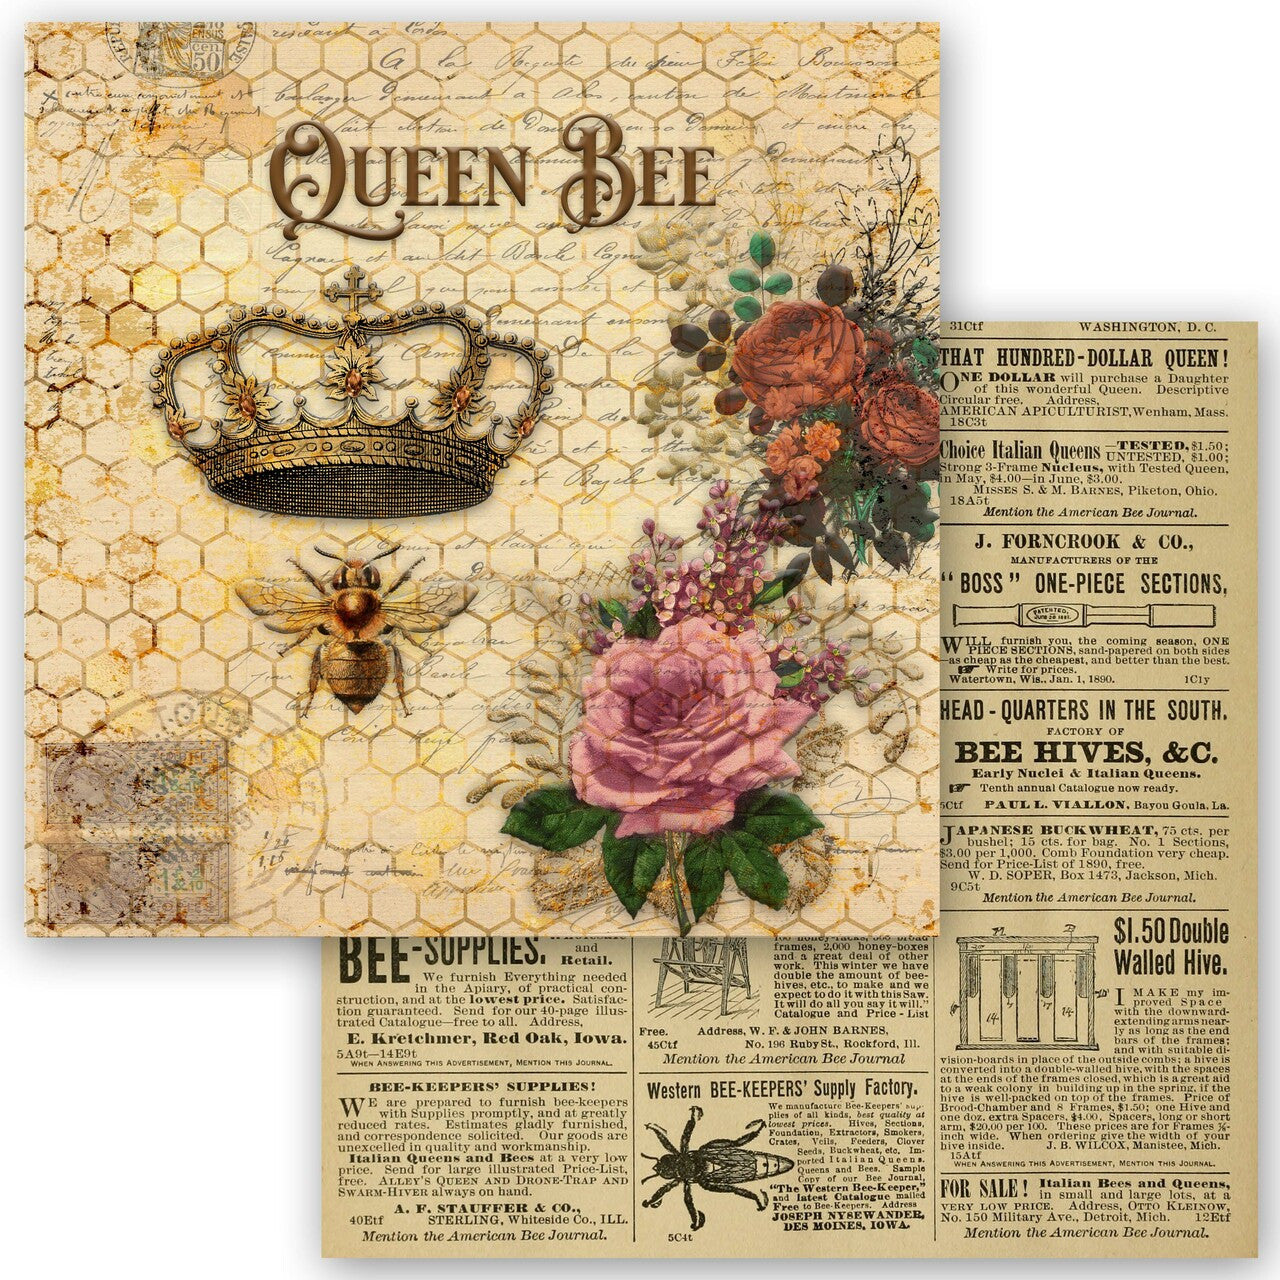 Queen Bee Collection Scrapbook Set - Mini